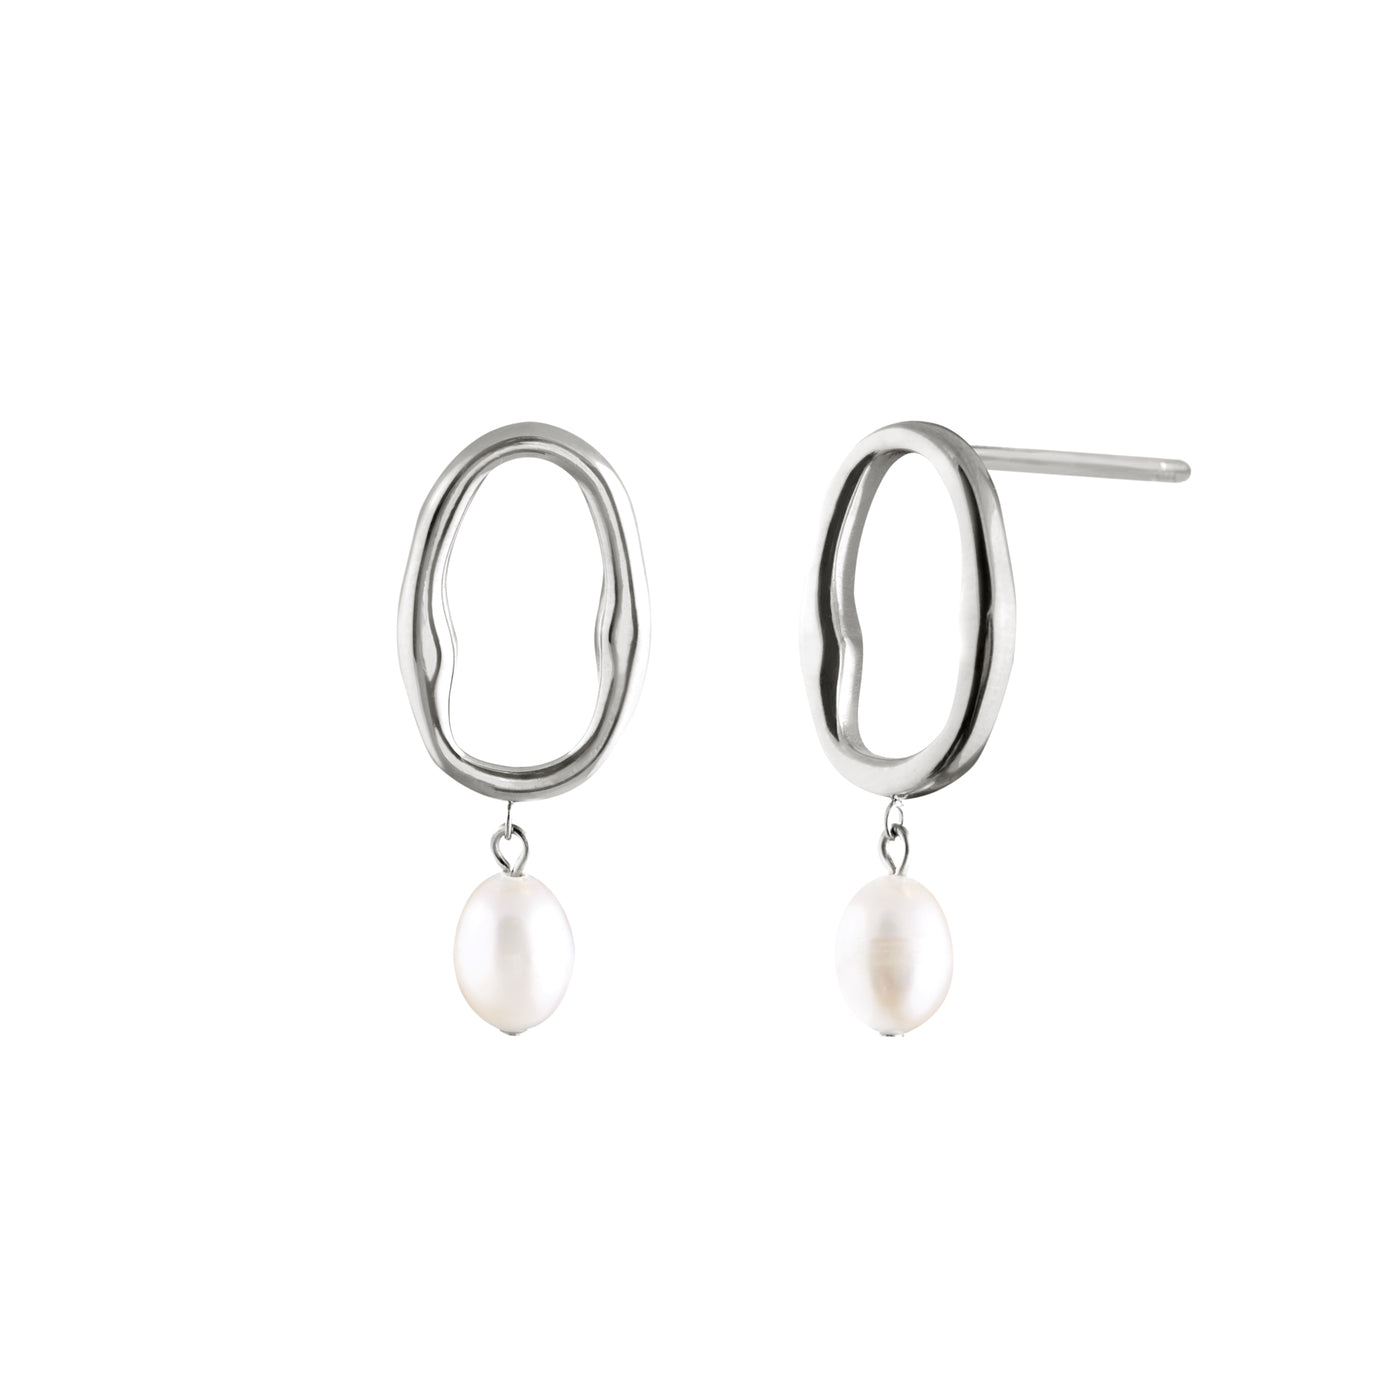 Dolce Vita Earrings - Silver Dolce Vita Earrings - Silver